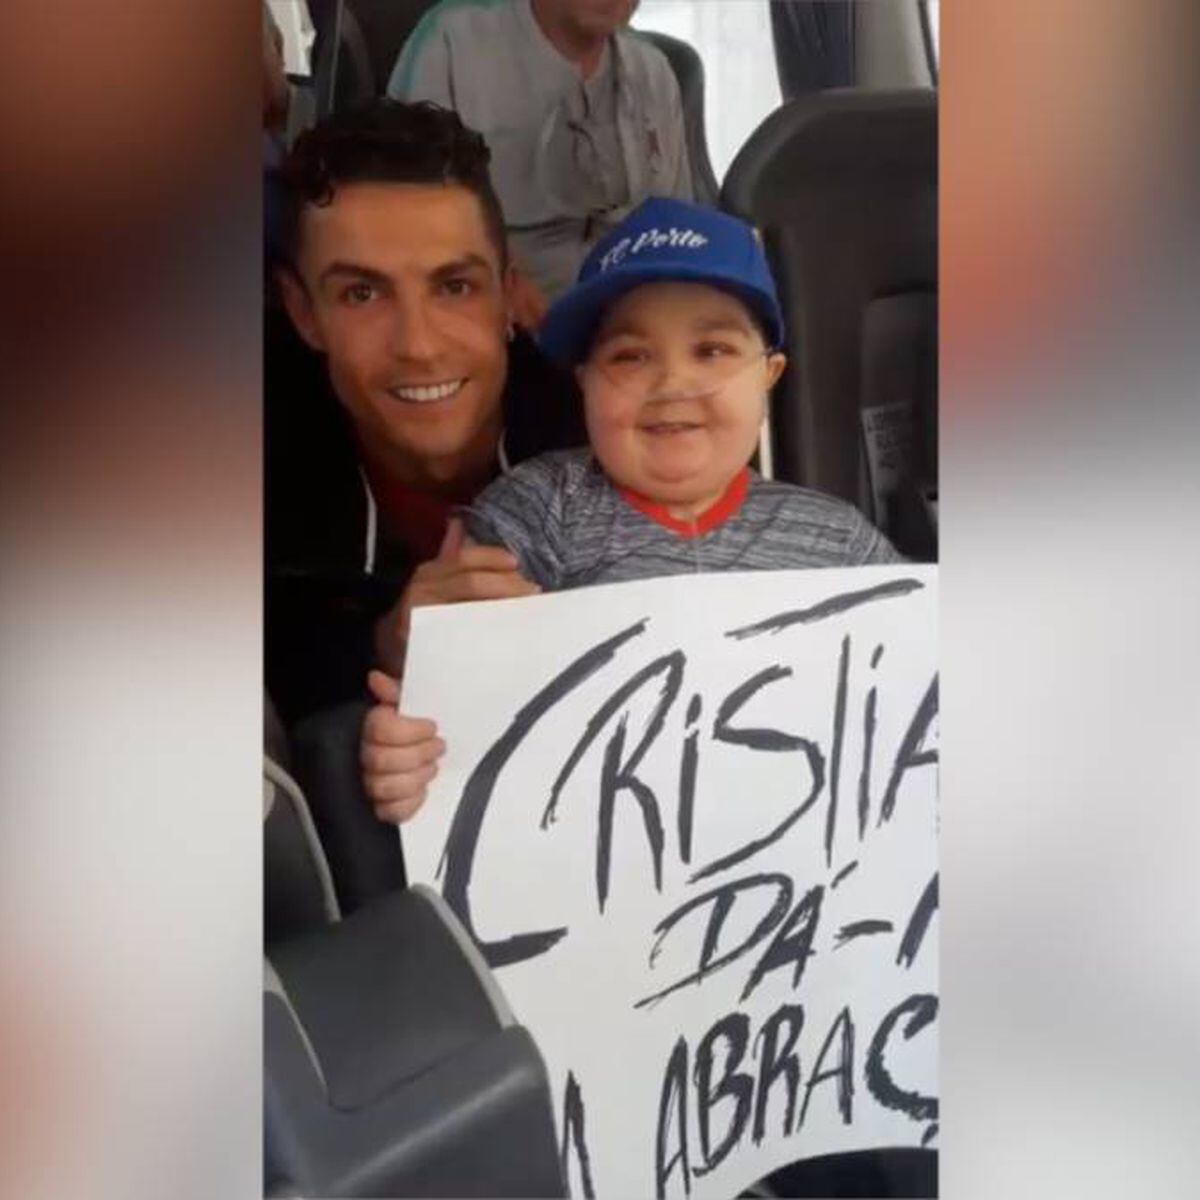 Video del conmovedor gesto de Cristiano Ronaldo con un niño en la gira del  Al Nassr